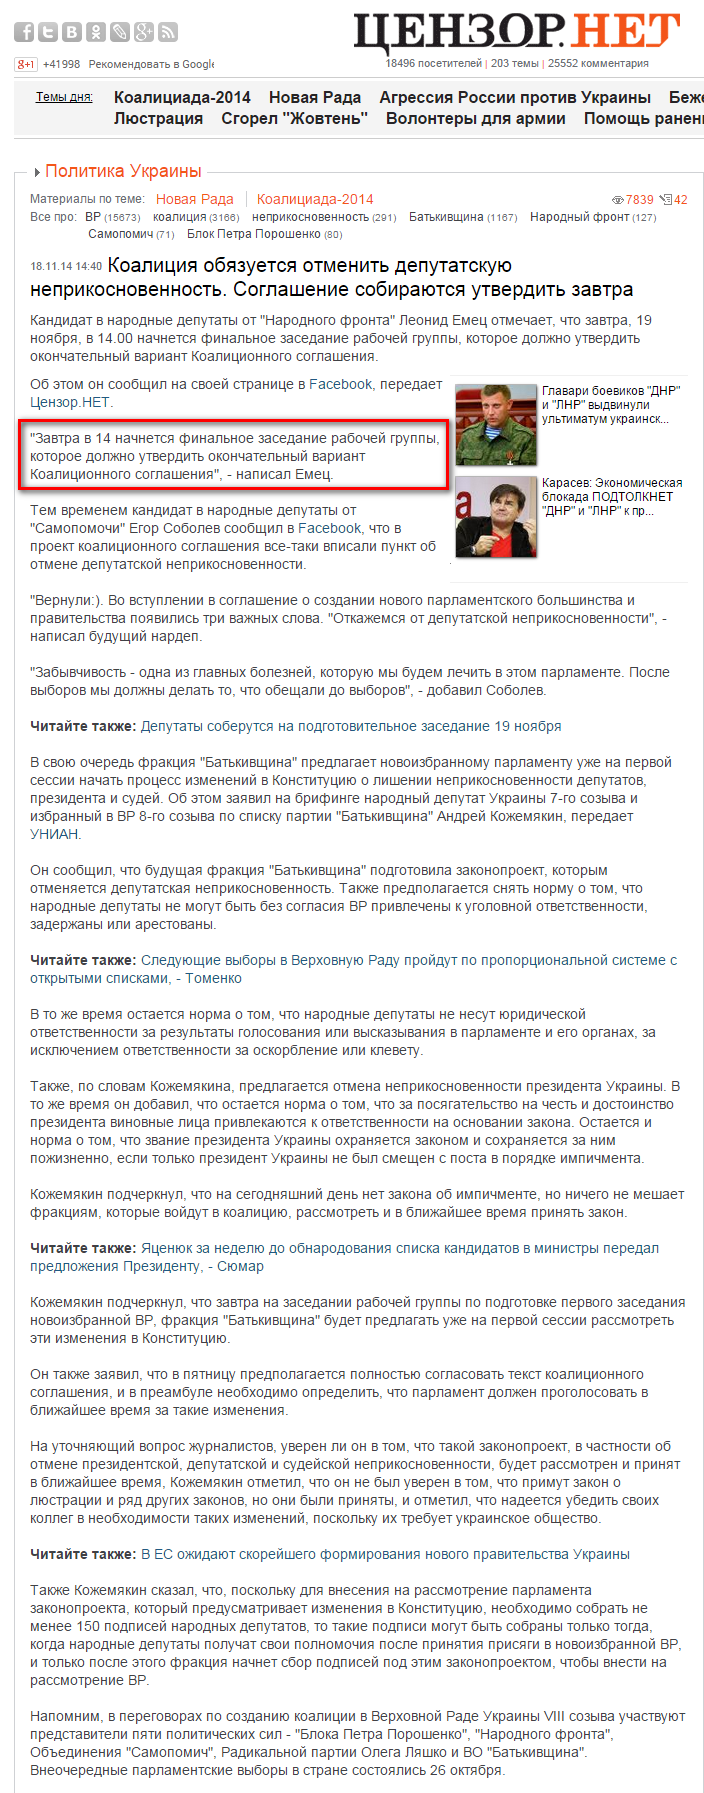 http://censor.net.ua/news/312477/koalitsiya_obyazuetsya_otmenit_deputatskuyu_neprikosnovennost_soglashenie_sobirayutsya_utverdit_zavtra